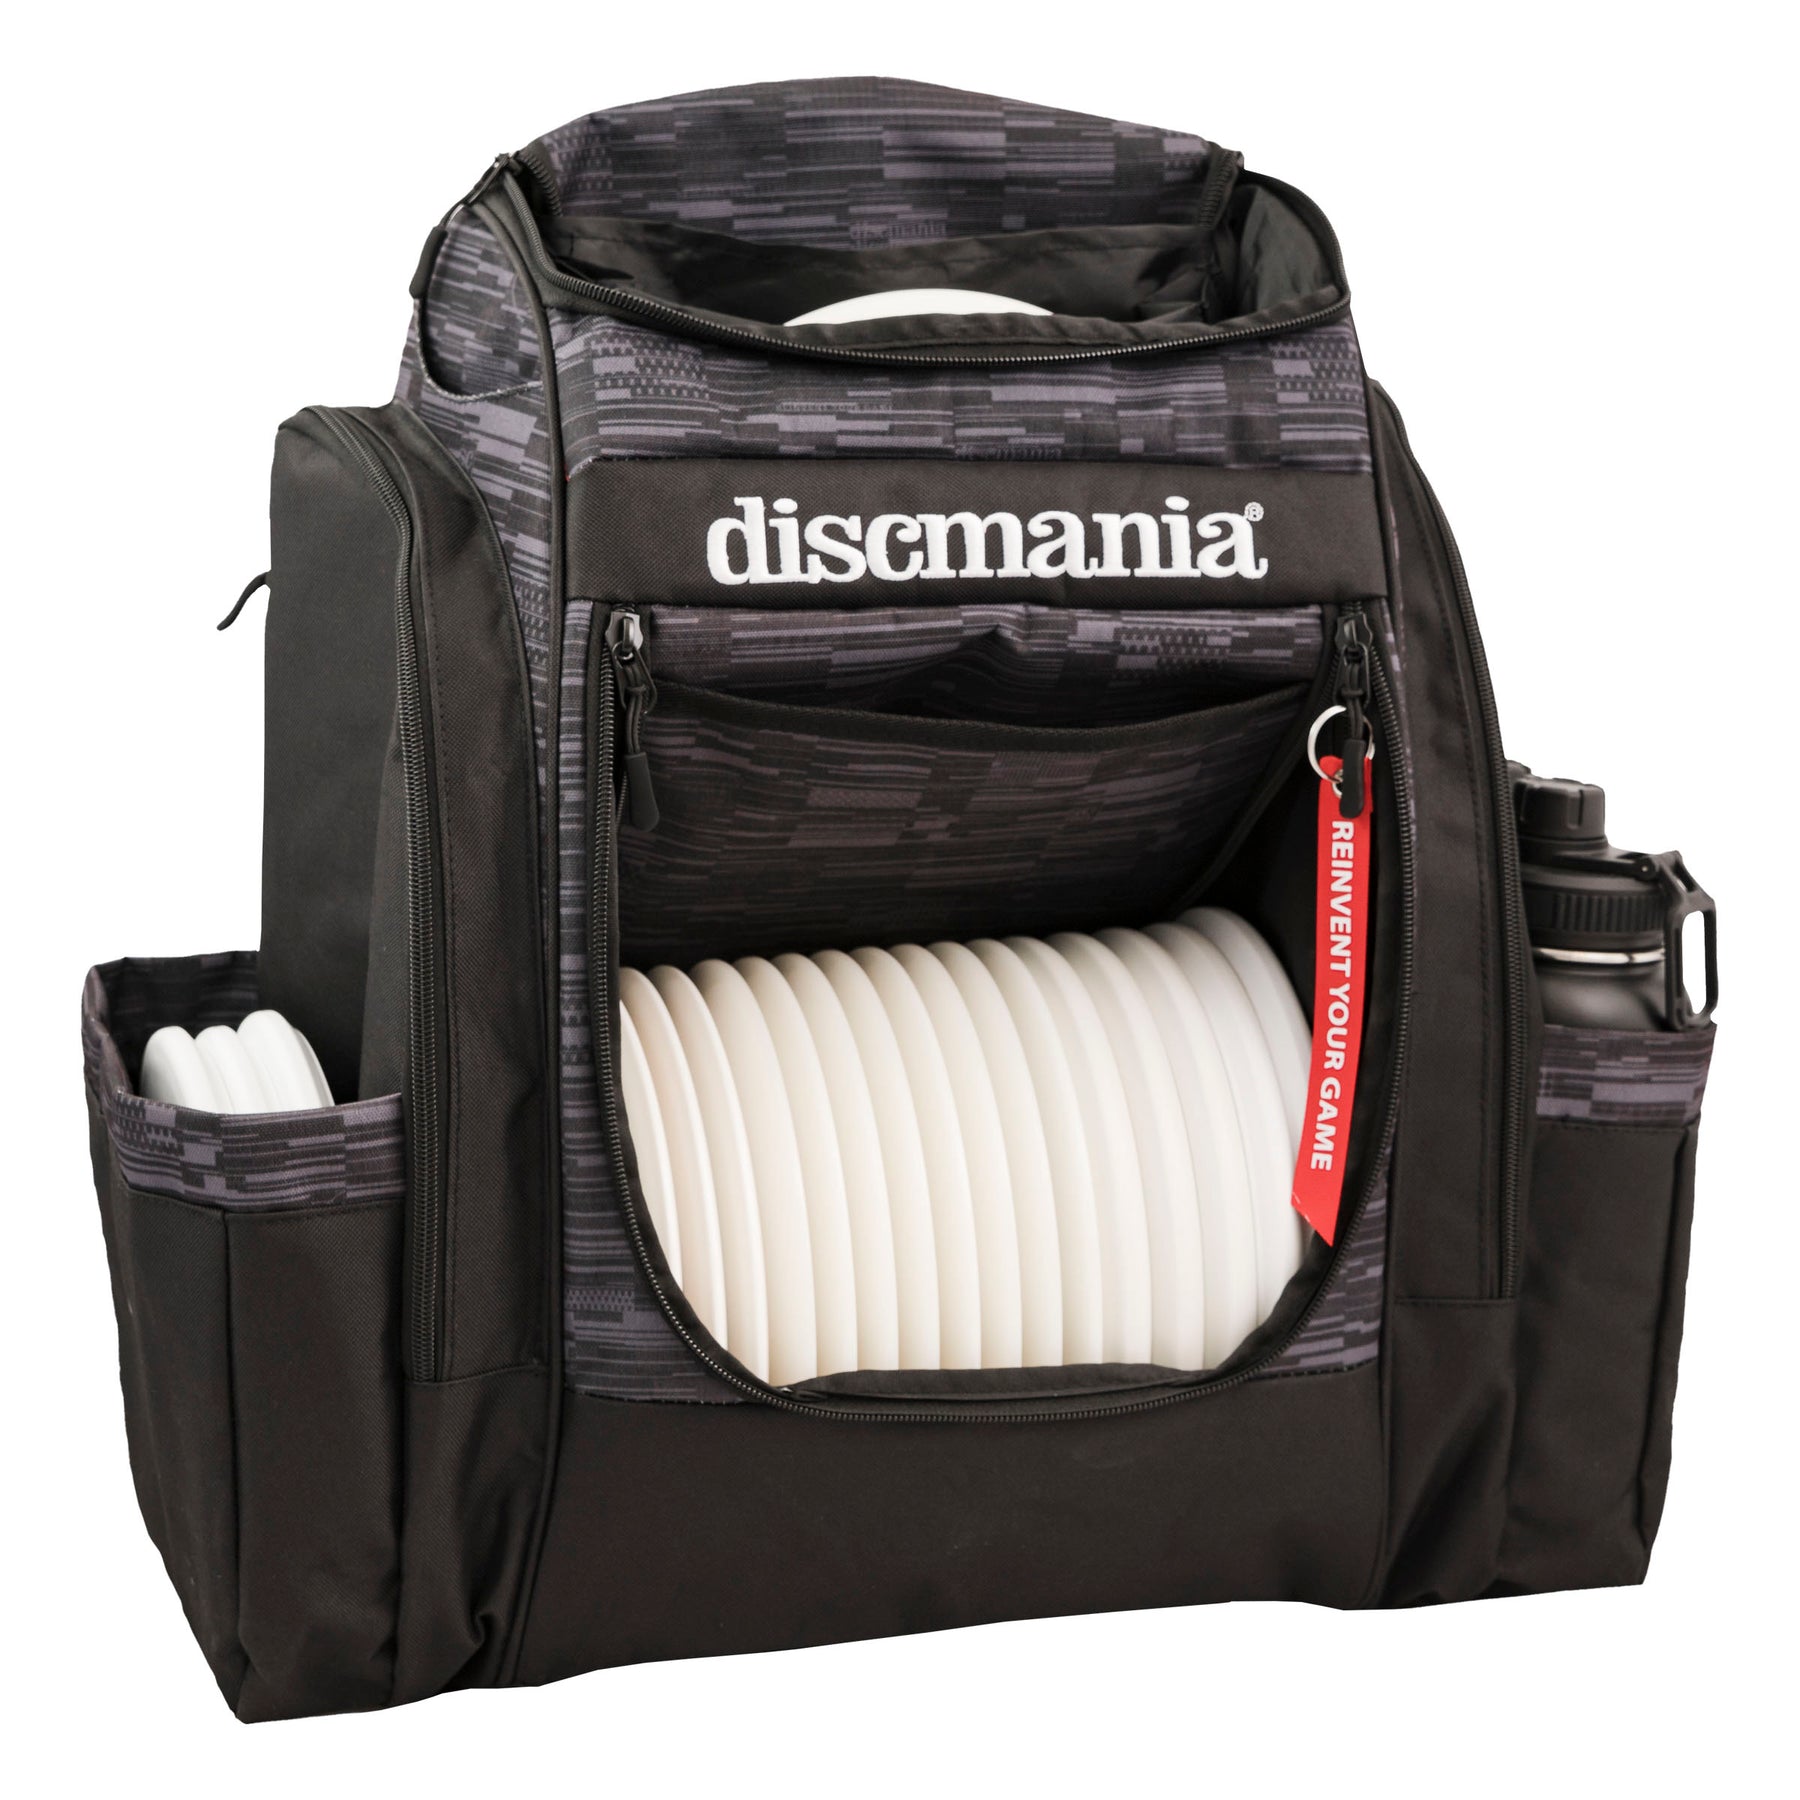 Discmania Fanatic Sky Bag